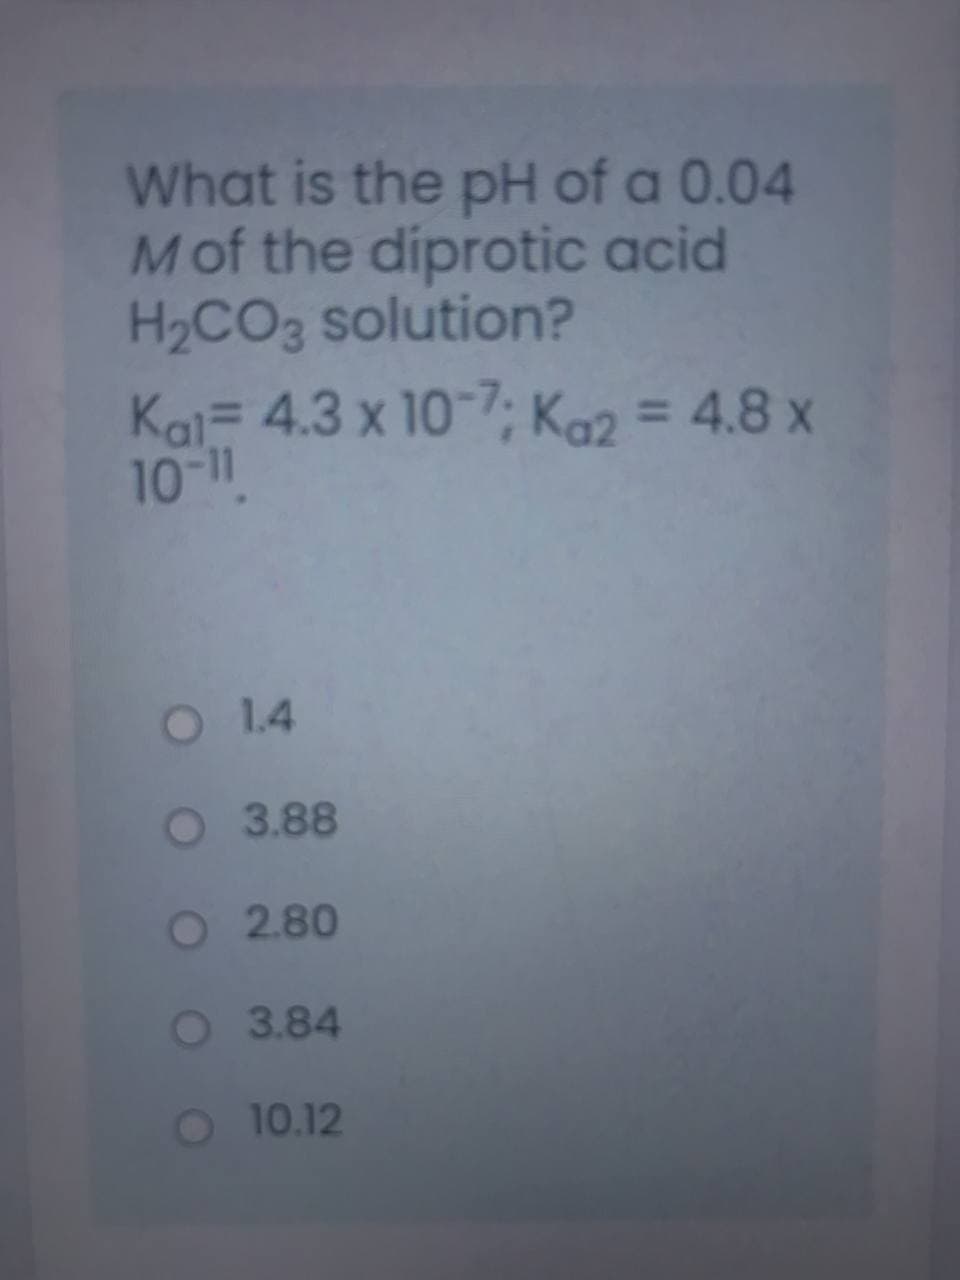 What is the pH of a 0.04
Mof the diprotic acid
H2CO3 solution?
Kai- 4.3 x 10-7; Ka2 = 4.8 x
10-11
O 1.4
O 3.88
O 2.80
O 3.84
O 10.12
